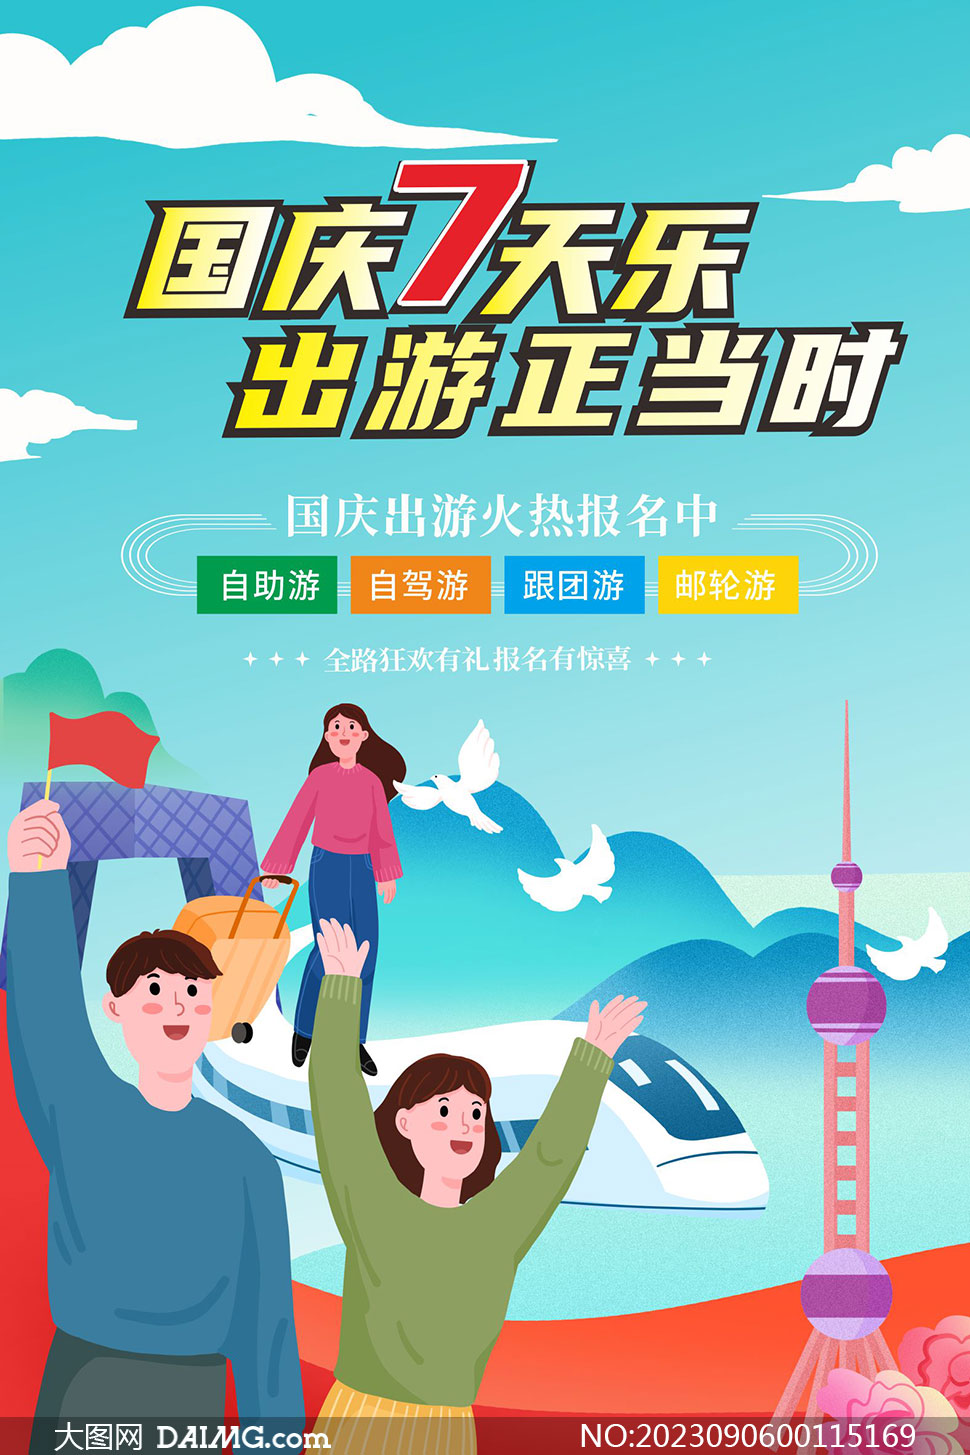 国庆节旅行社旅游宣传海报矢量素材